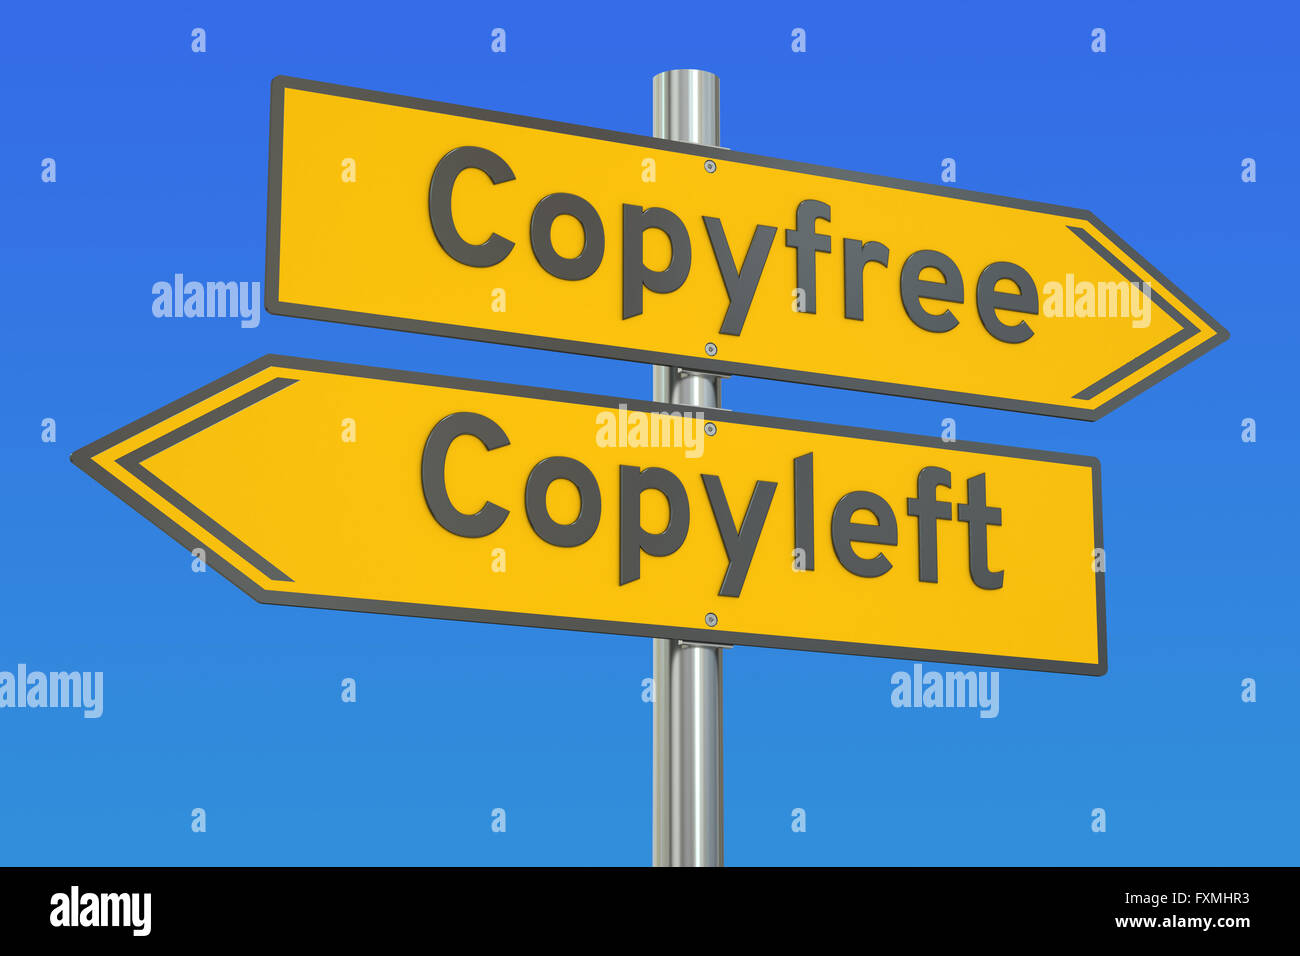 copyfree vs copyleft concept, 3D rendering Stock Photo